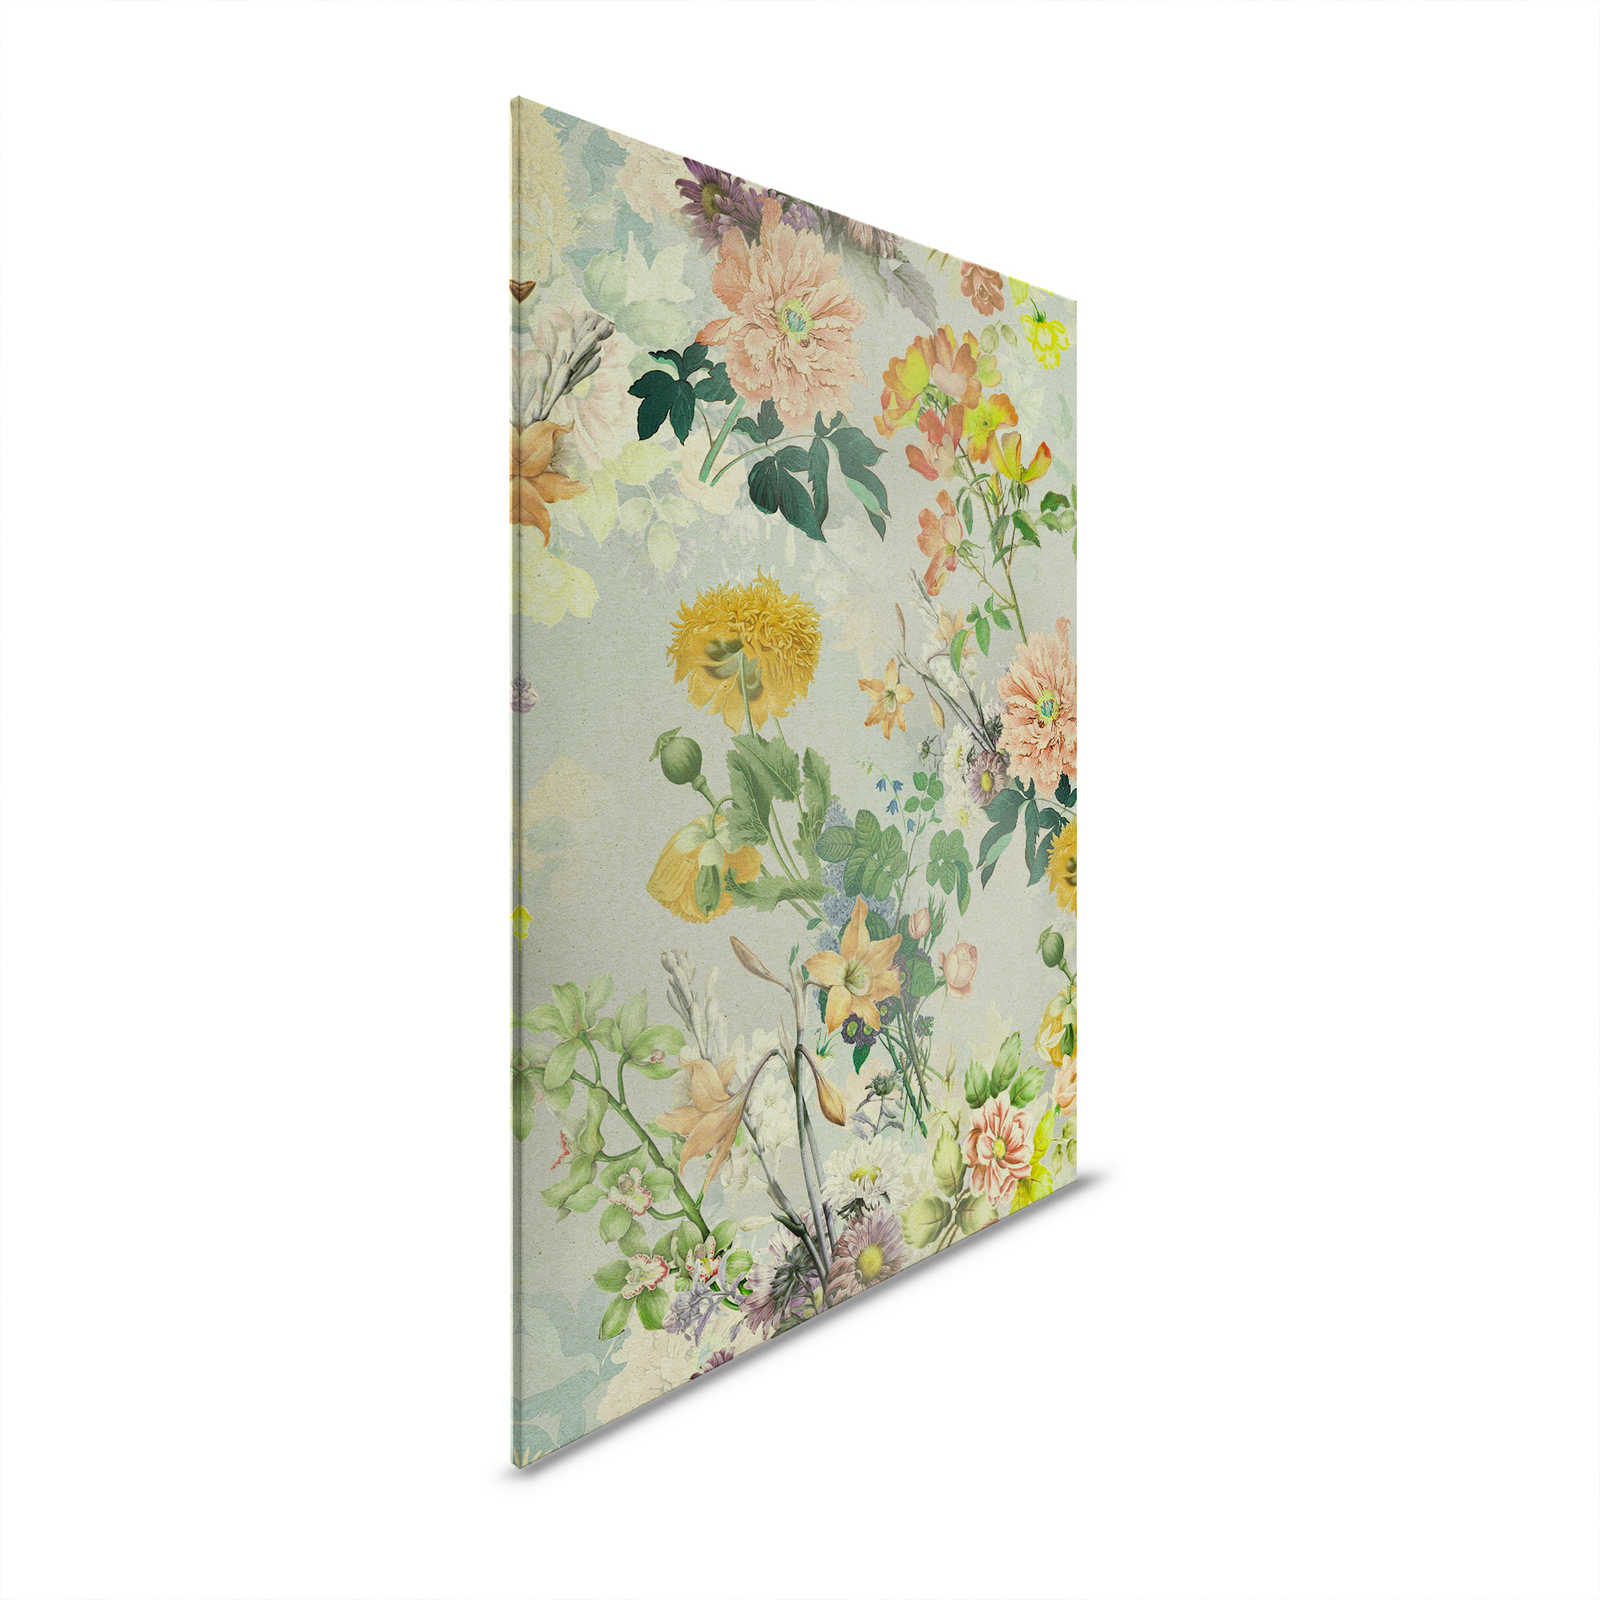 Amelies Home 2 - Fiori Quadro su tela con fiori colorati in stile country - 1,20 m x 0,80 m
